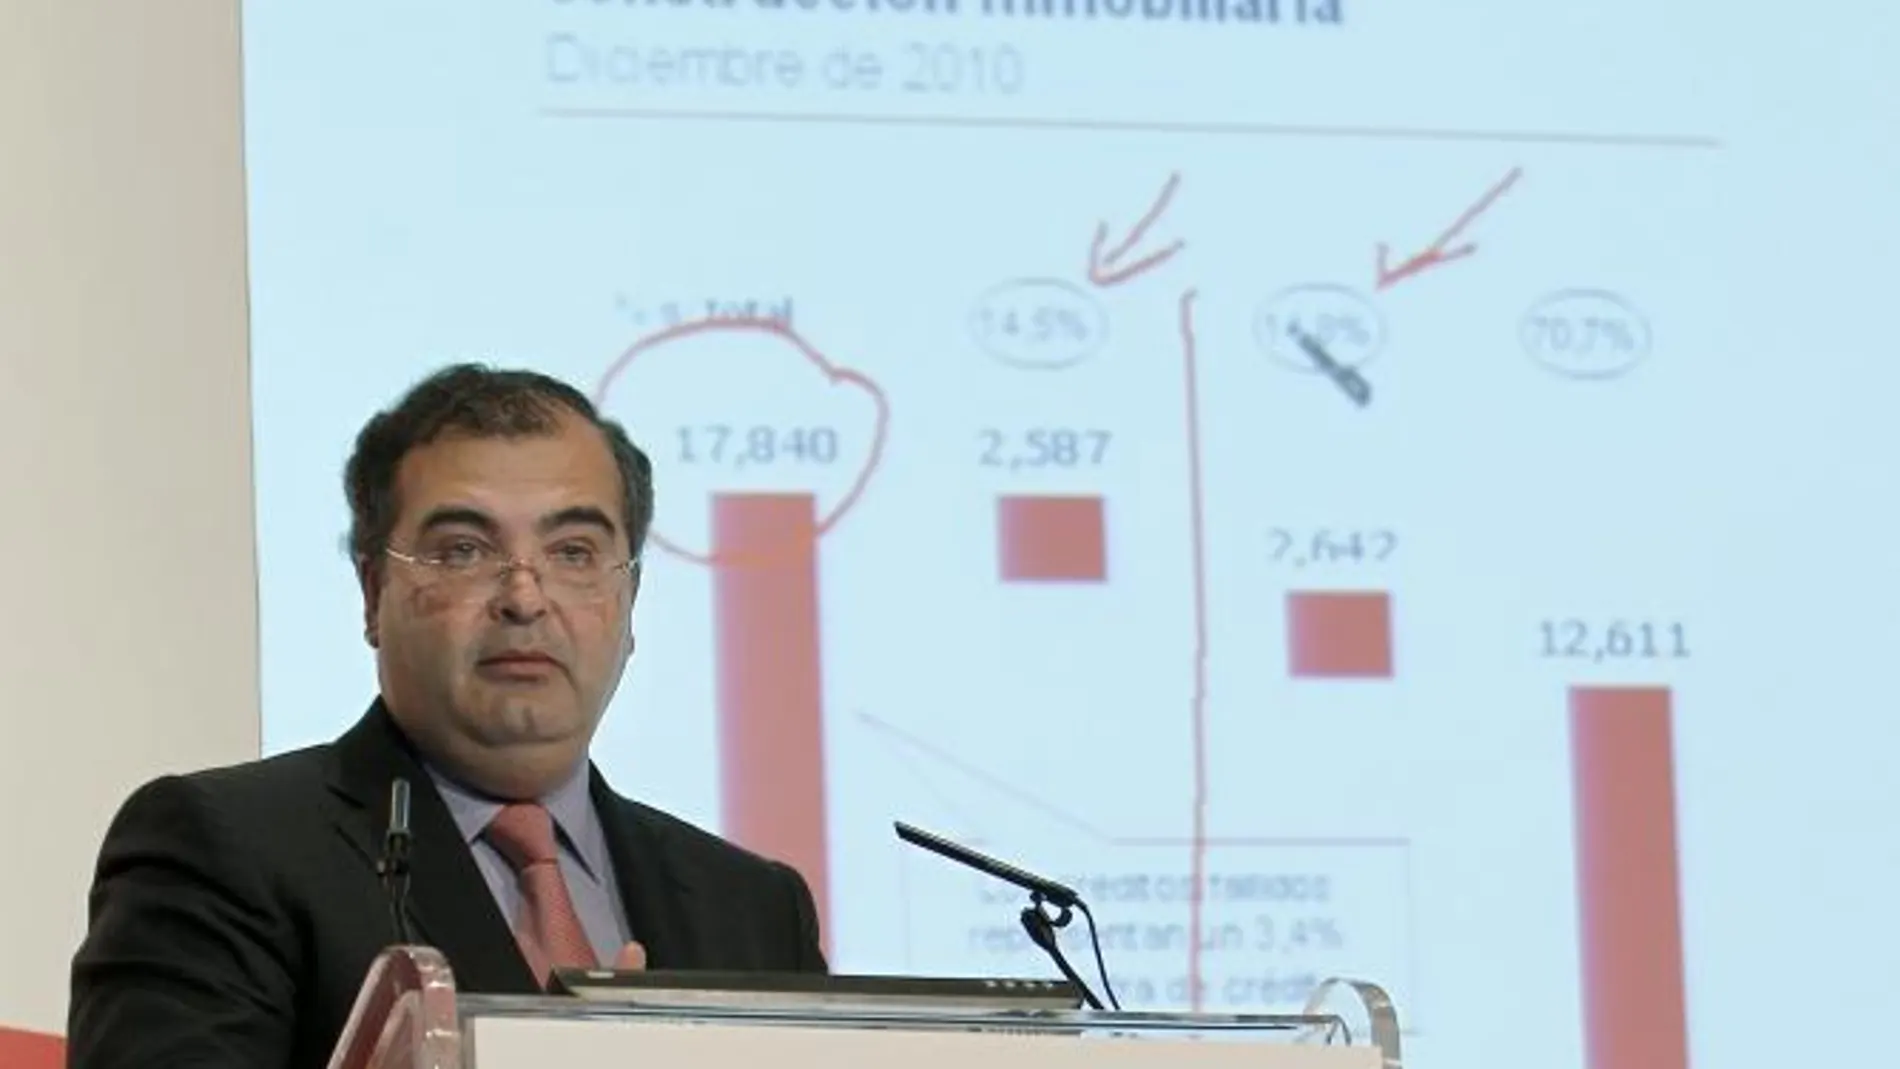 El presidente del Popular, Angel Ron, durante la presentación de los resultados de 2010